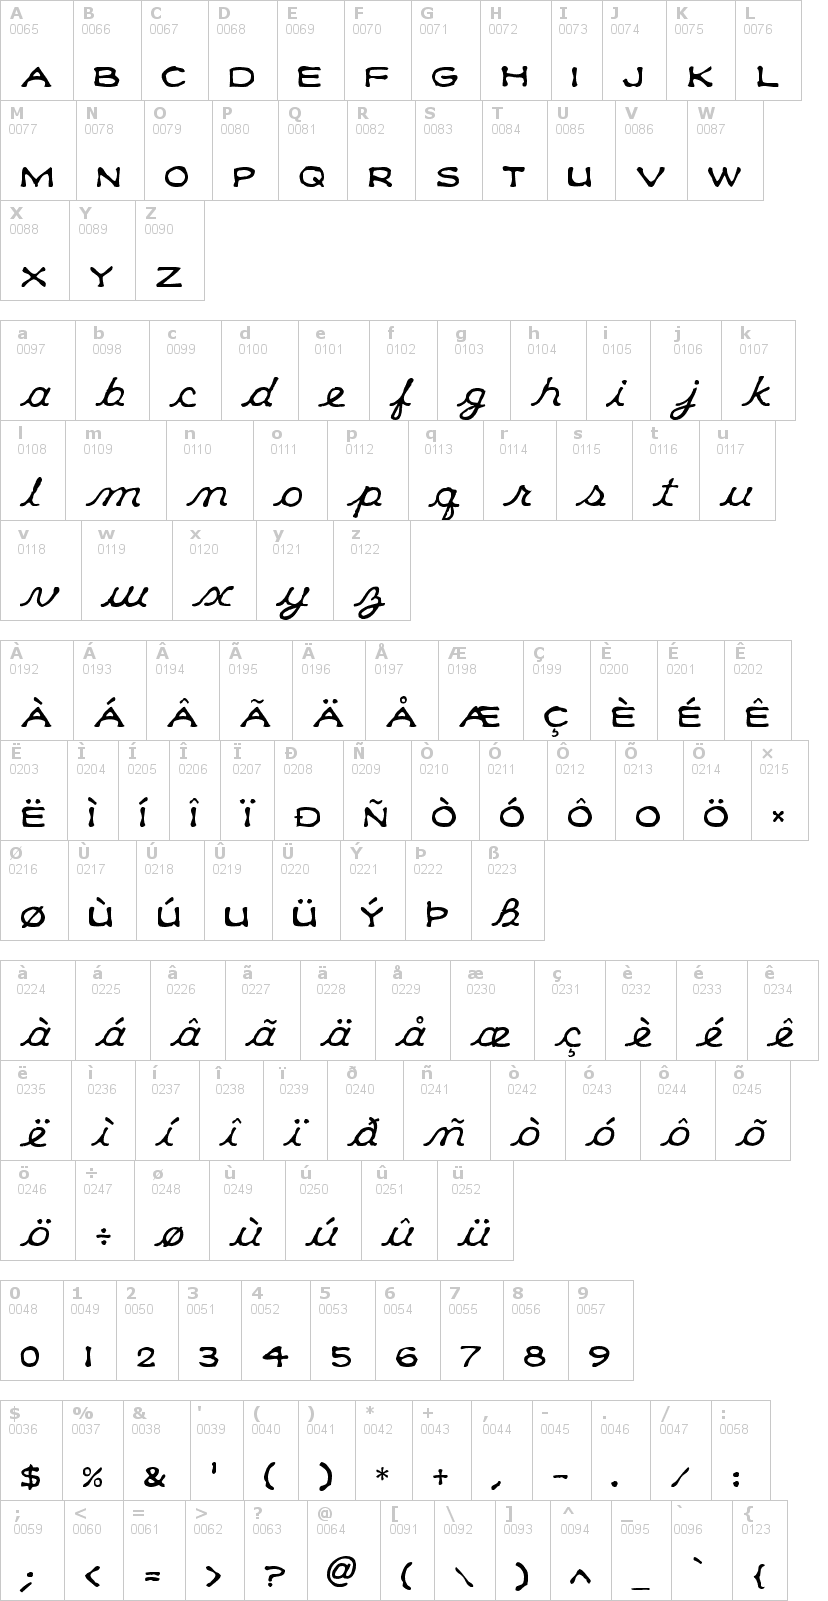 Lettere dell'alfabeto del font klee-capscript con le quali è possibile realizzare adesivi prespaziati